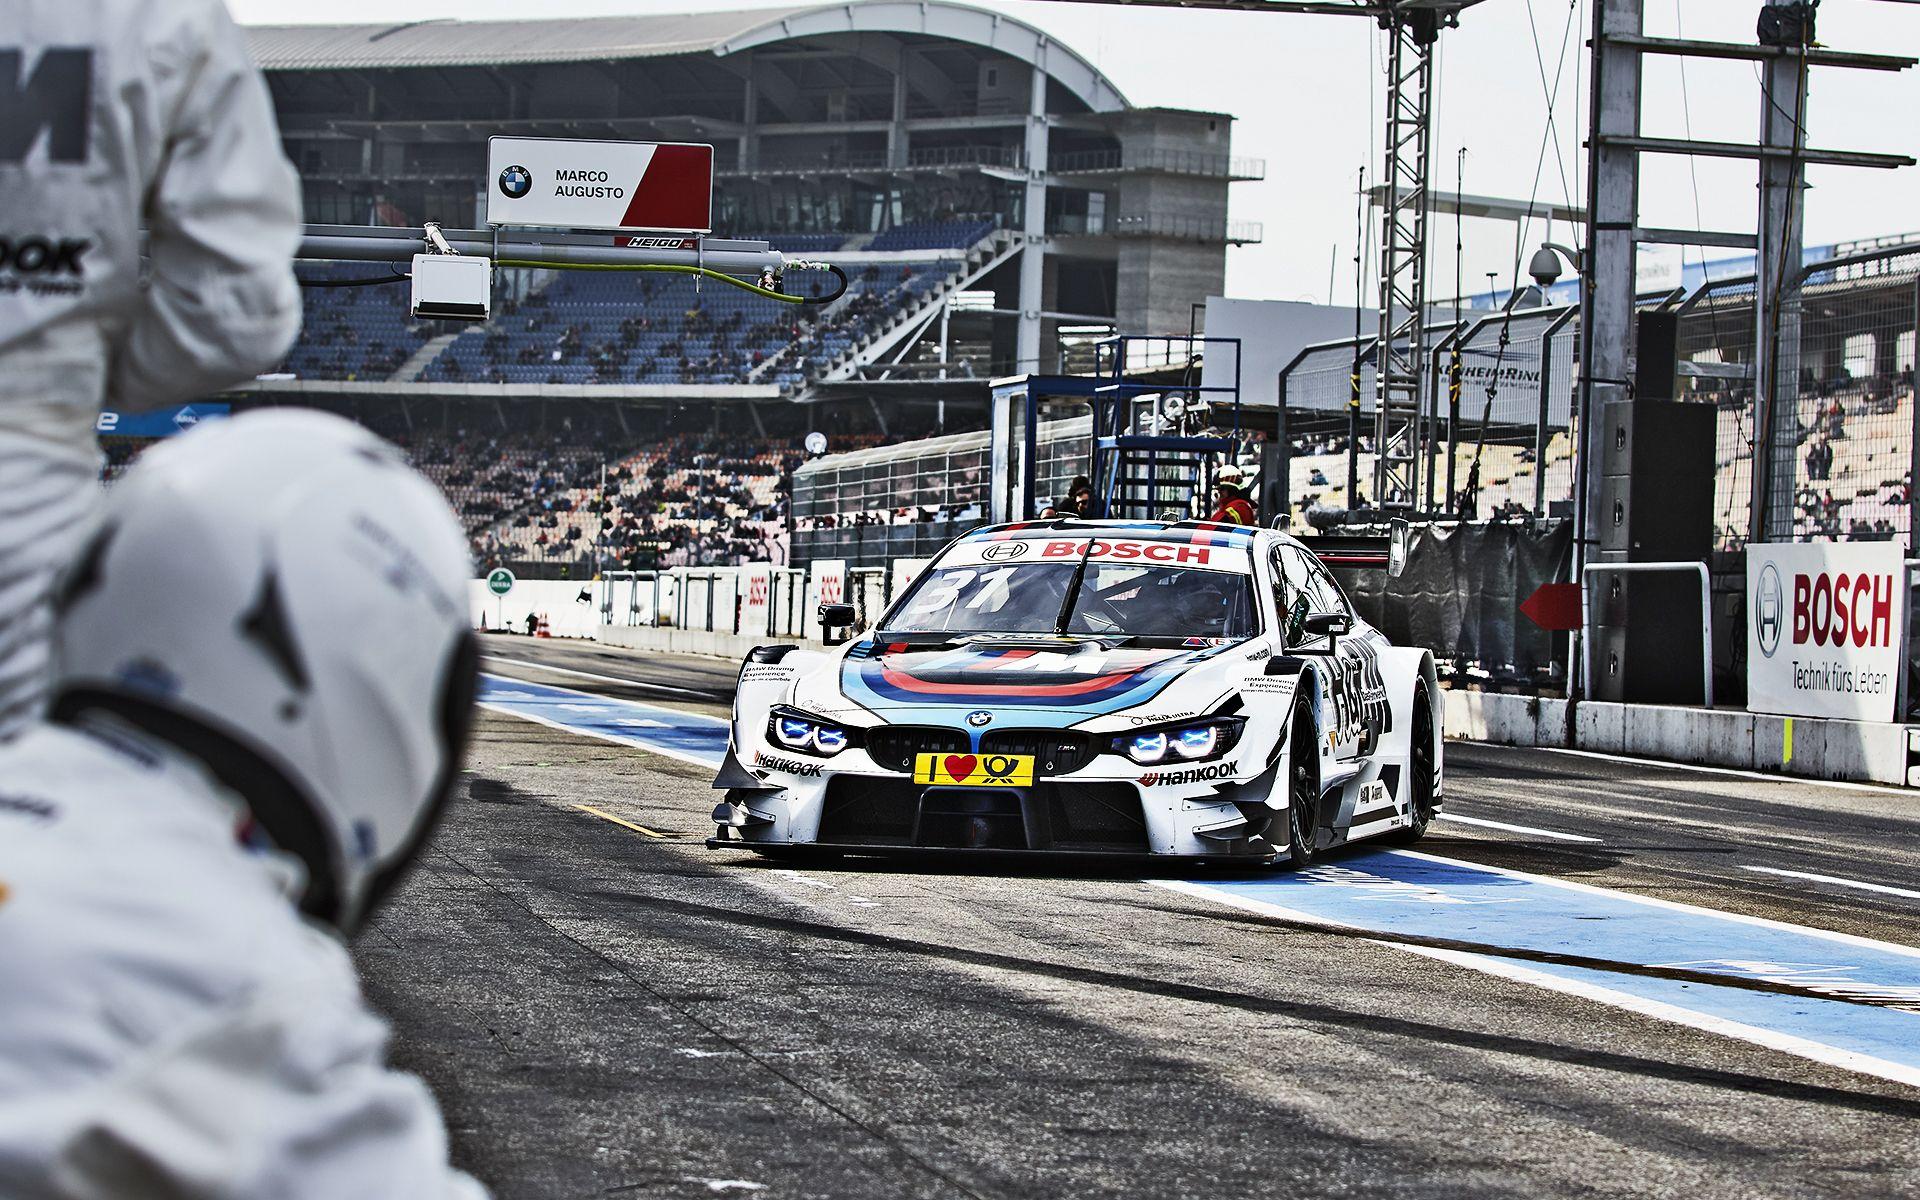 BMW Motorsport Wallpapers - Top Free BMW Motorsport ...